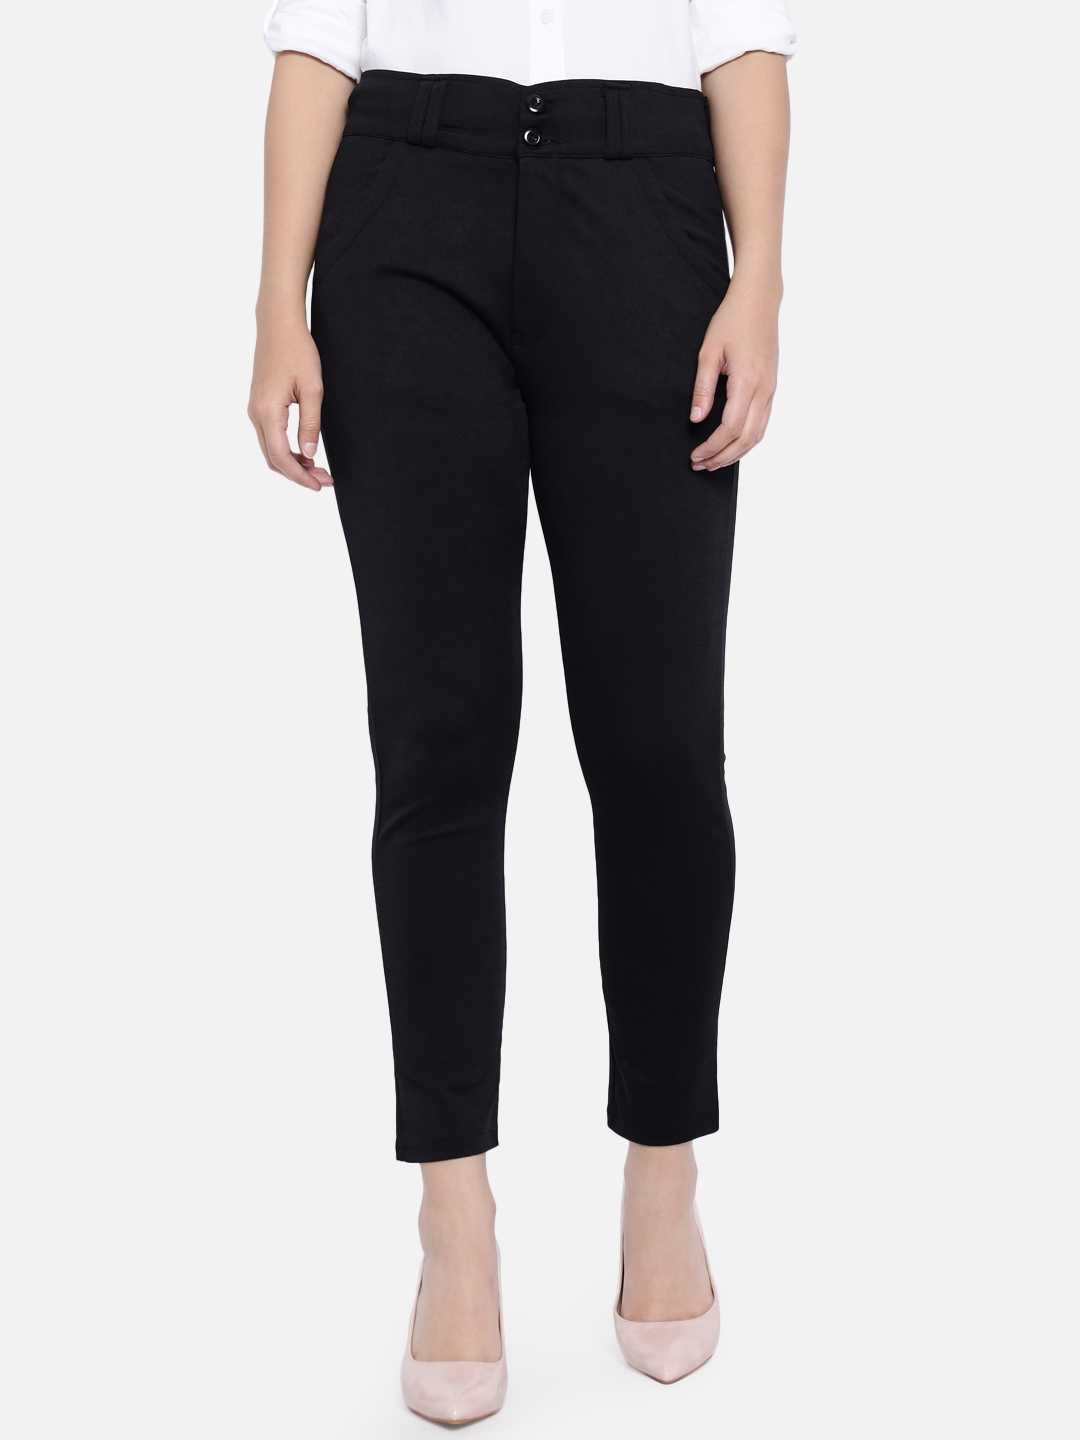 Buy Beige Trousers  Pants for Women by Fig Online  Ajiocom